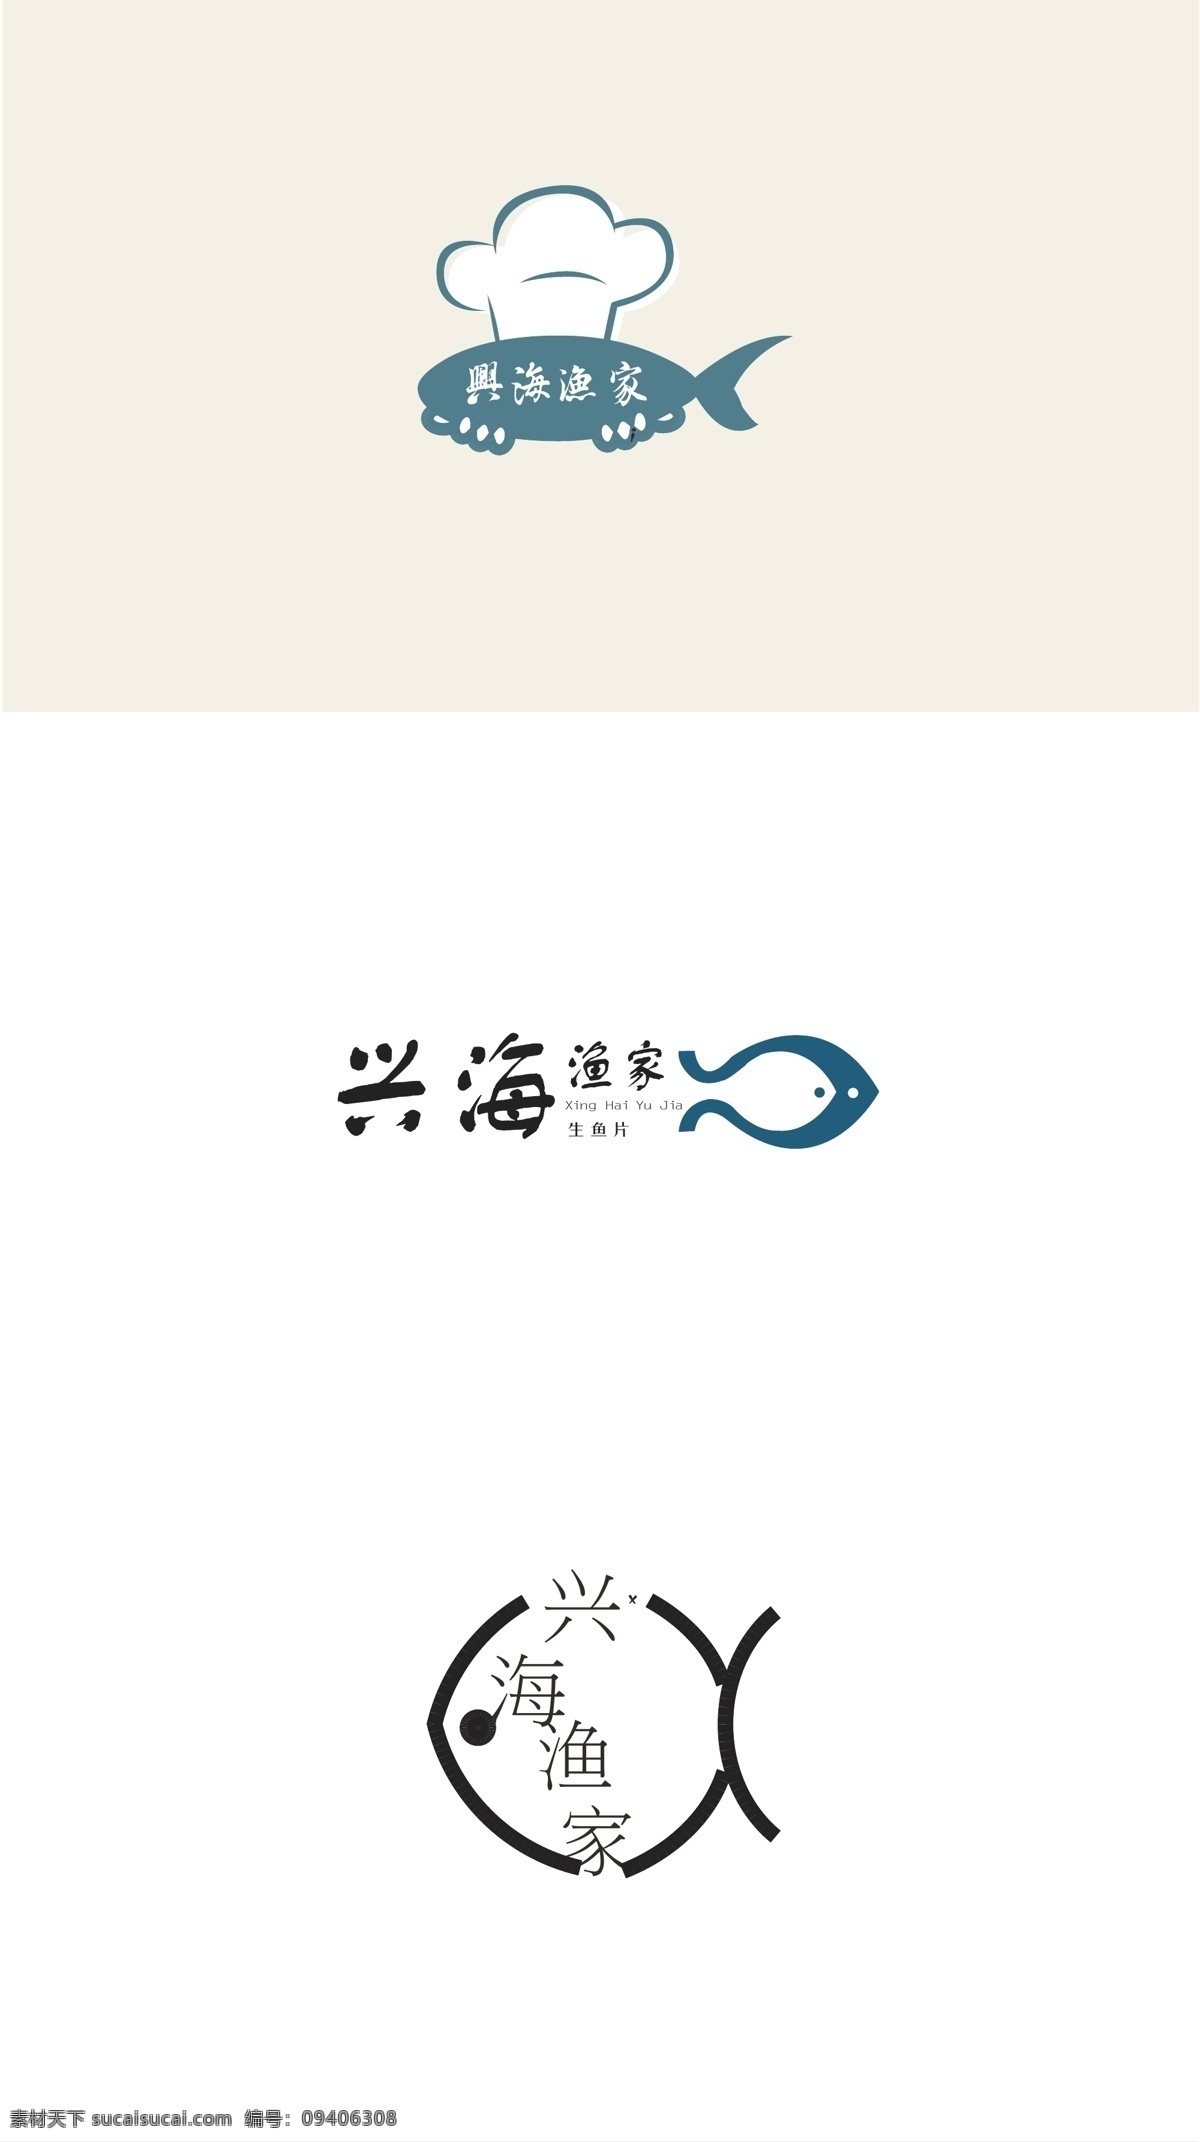 鱼logo 餐饮 logo 矢量 餐饮logo 抽象 标志 矢量图 创意设计 简洁 小图标 组合 企业 图标 图案 图形 创意logo 白色